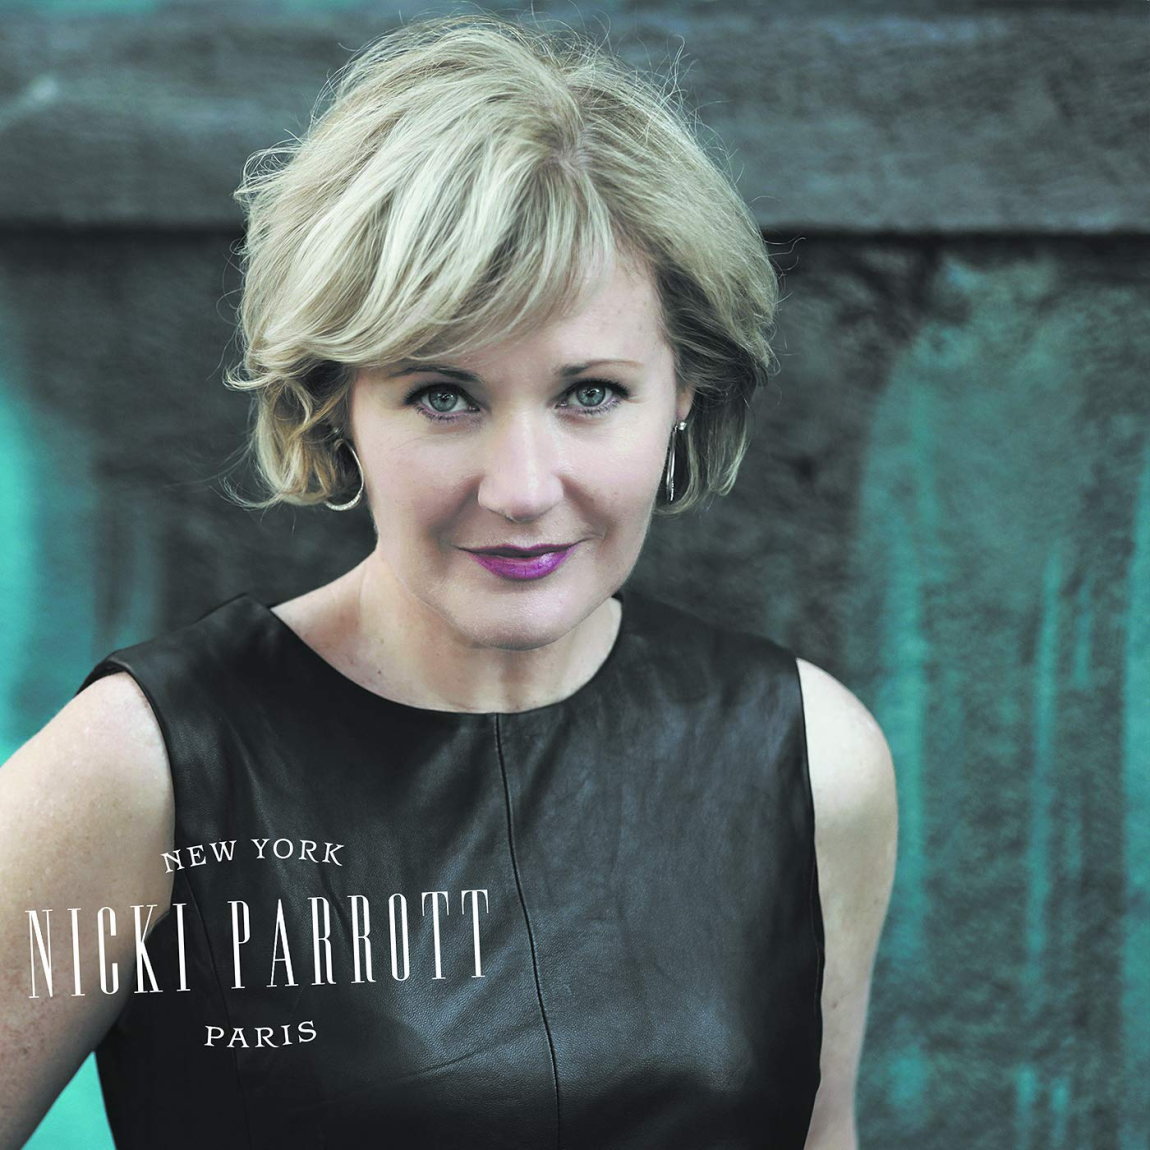 Nicki Parrott / New York to Paris